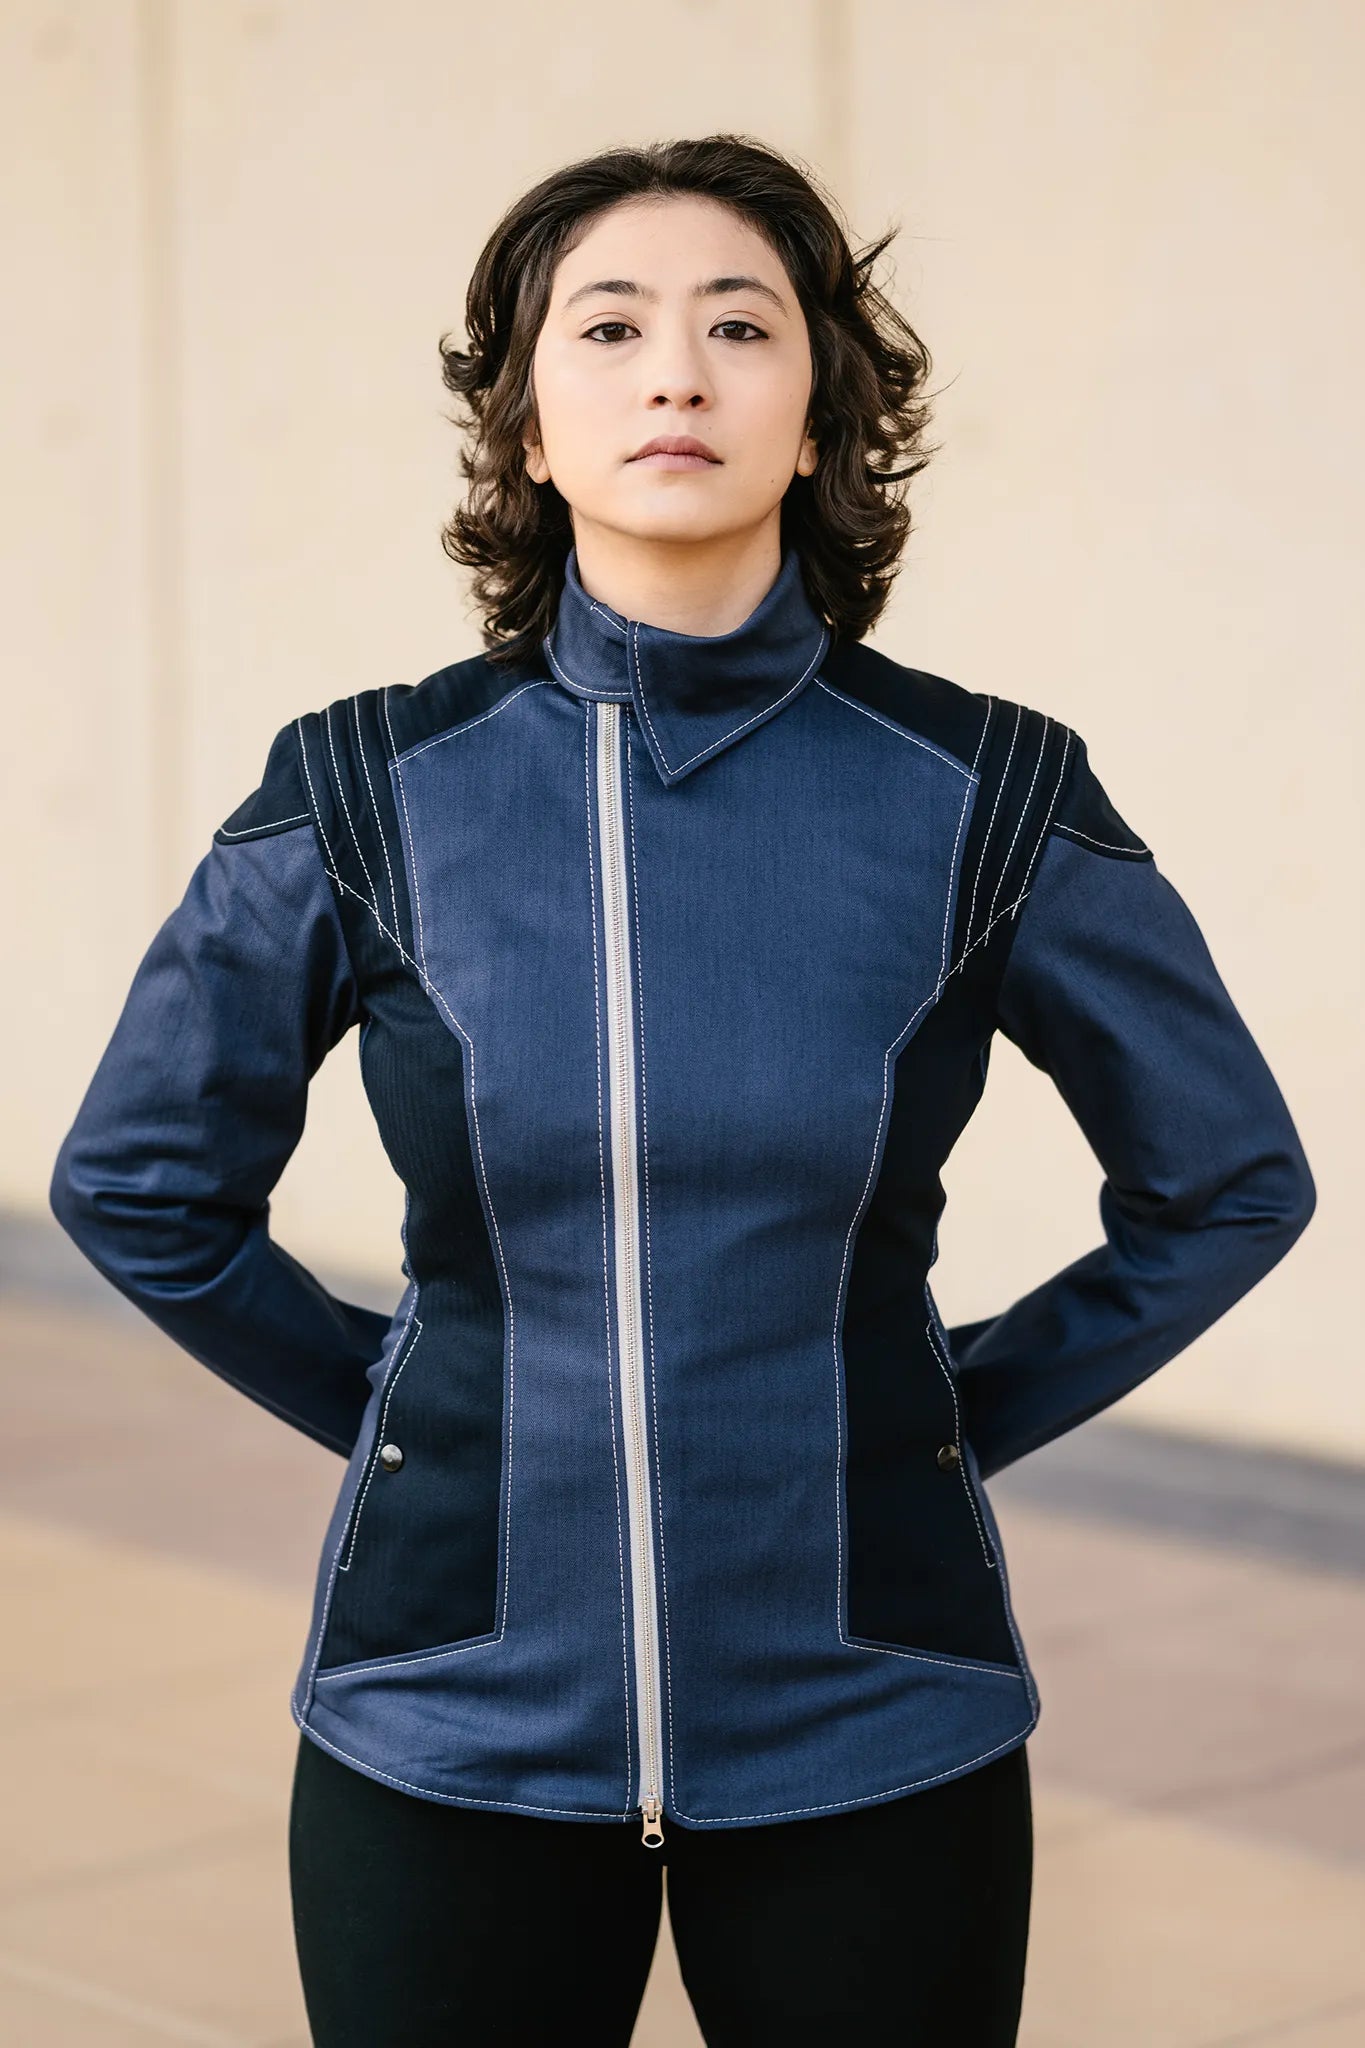 Starfleet 2256 - Sciences Silver [Womens]